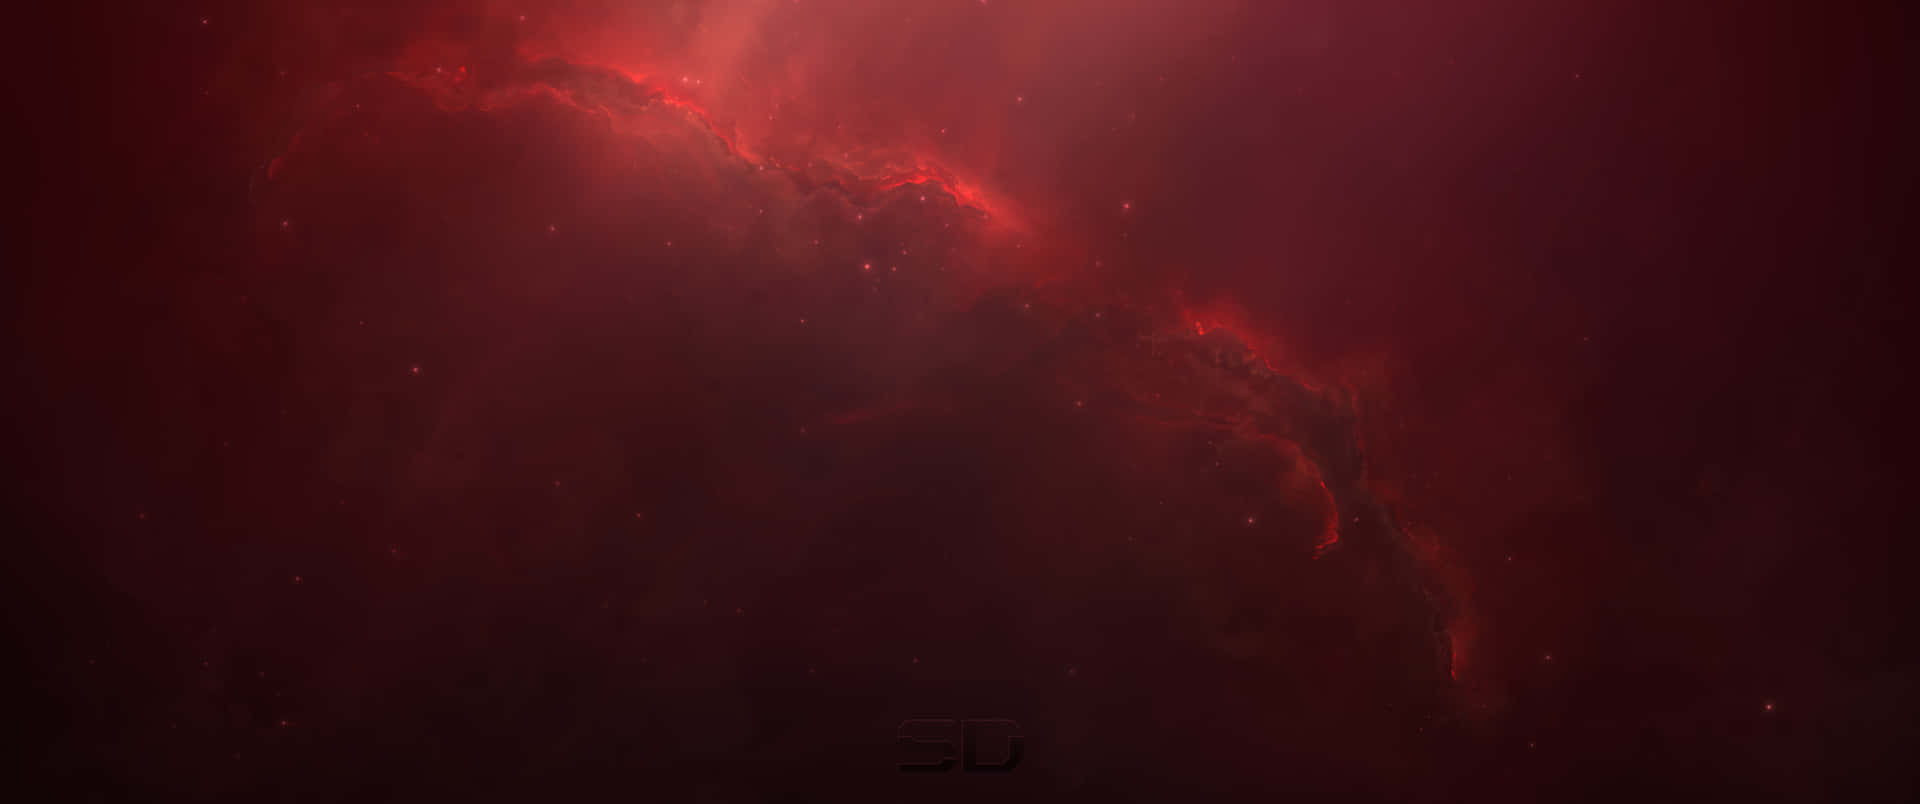 Galaxianublada Roja Ultra Ancha En Alta Definición. Fondo de pantalla